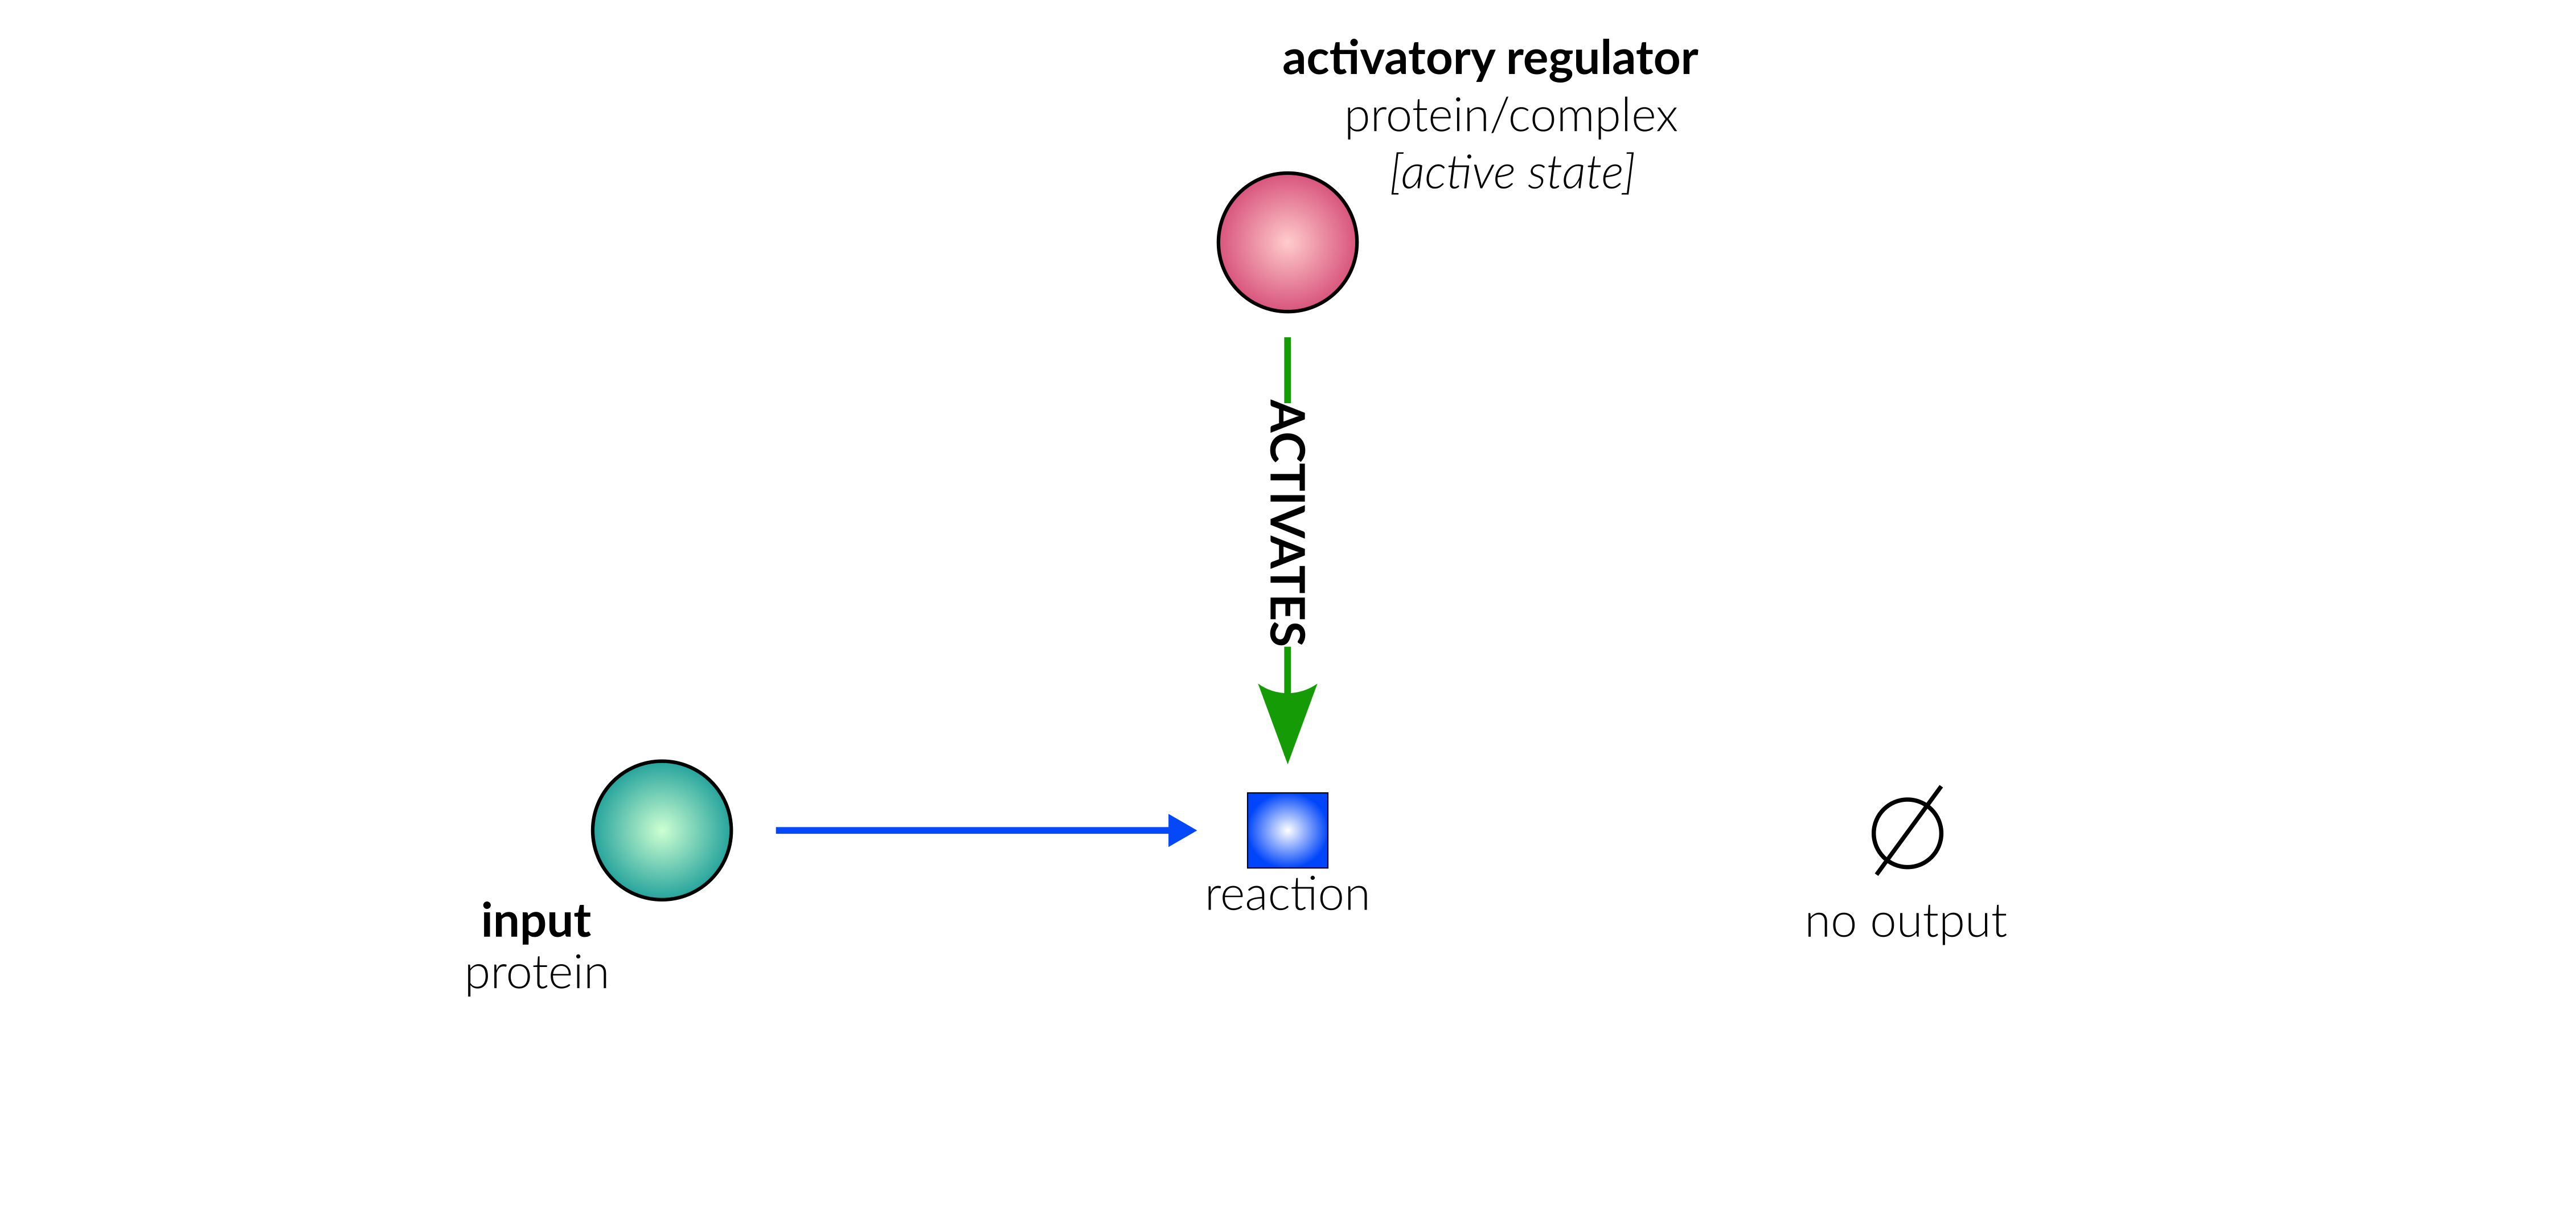 degradation/secretion reaction layout in database schematic